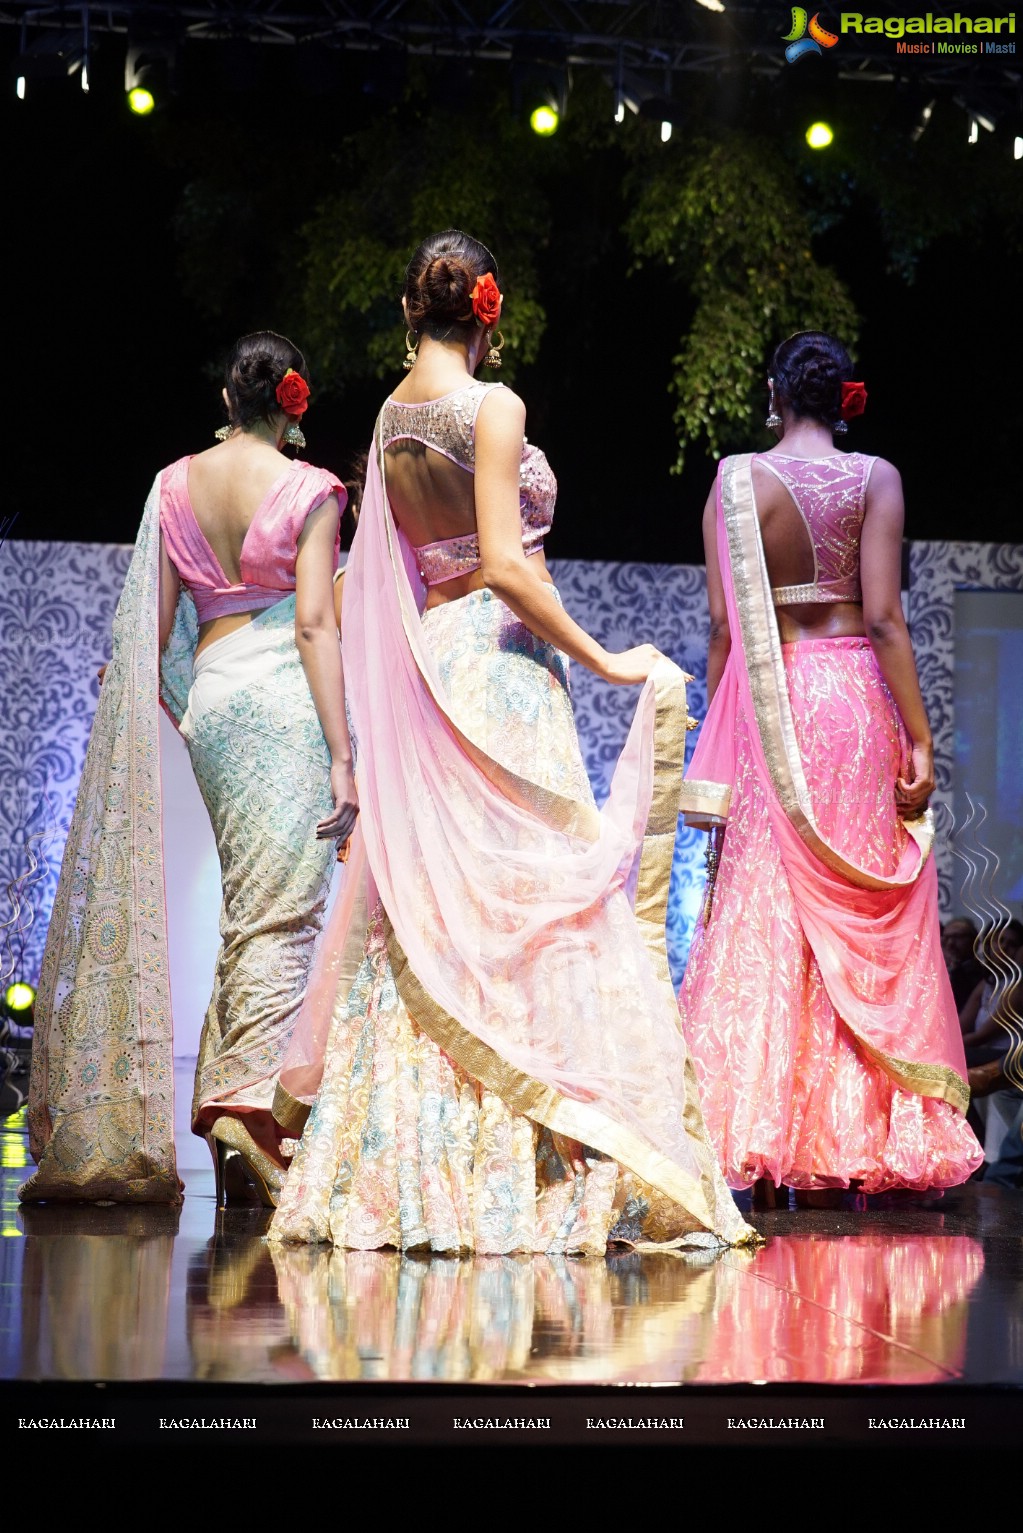 The International Glam Fashion Week 2016 (Day 1), Hyderabad